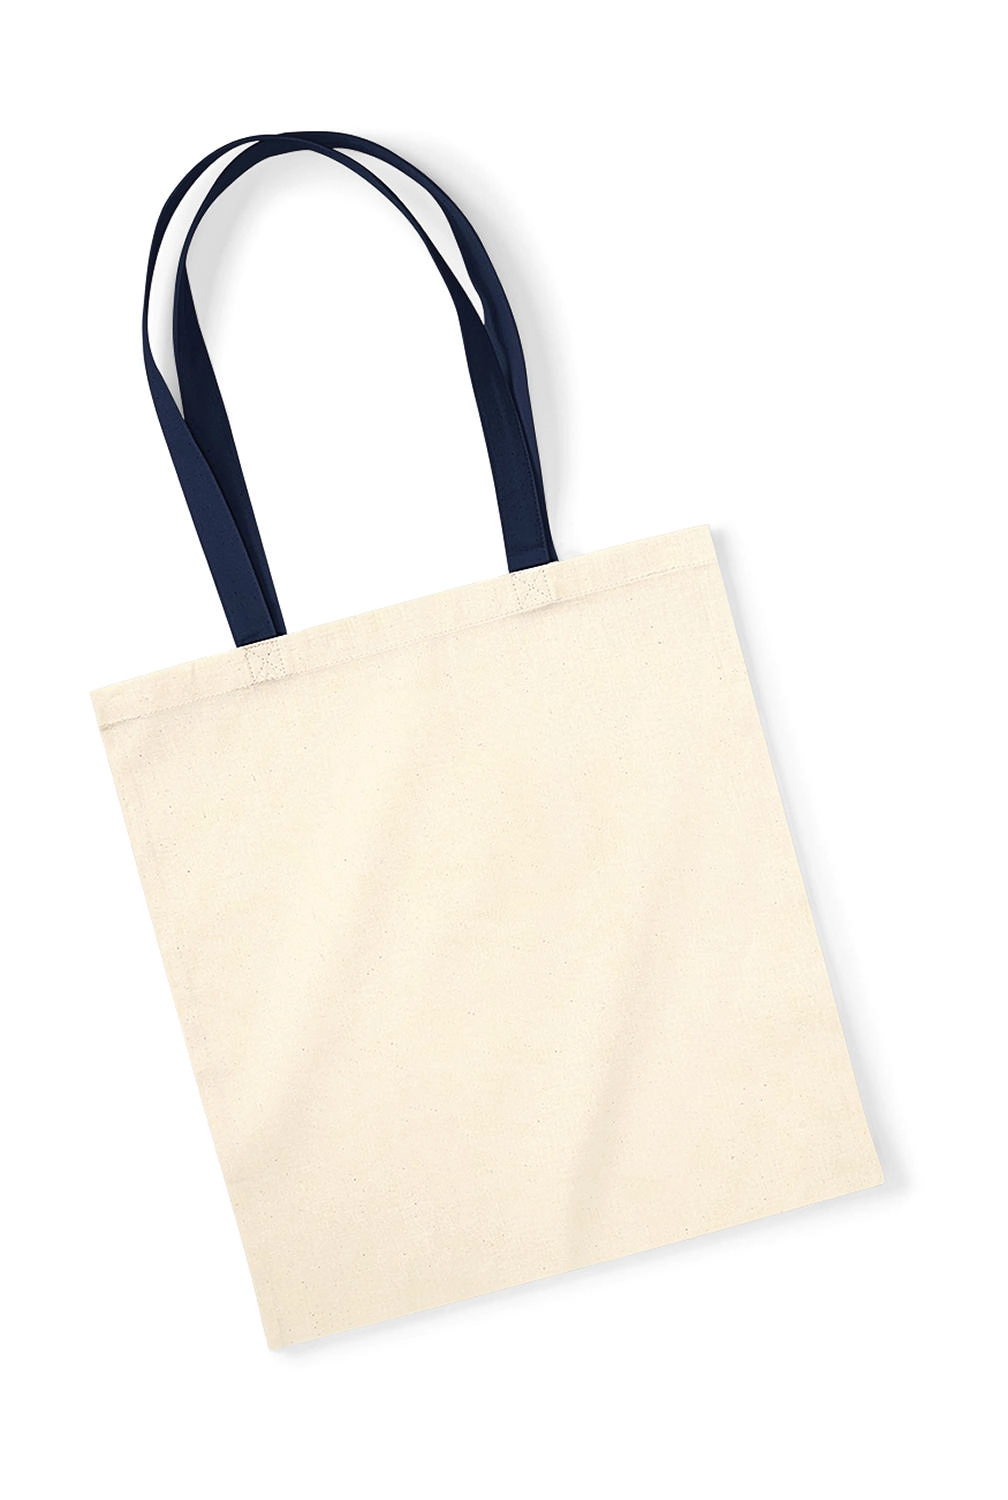 EarthAware™ Organic Bag for Life - Contrast Handle zum Besticken und Bedrucken in der Farbe Natural/French Navy mit Ihren Logo, Schriftzug oder Motiv.